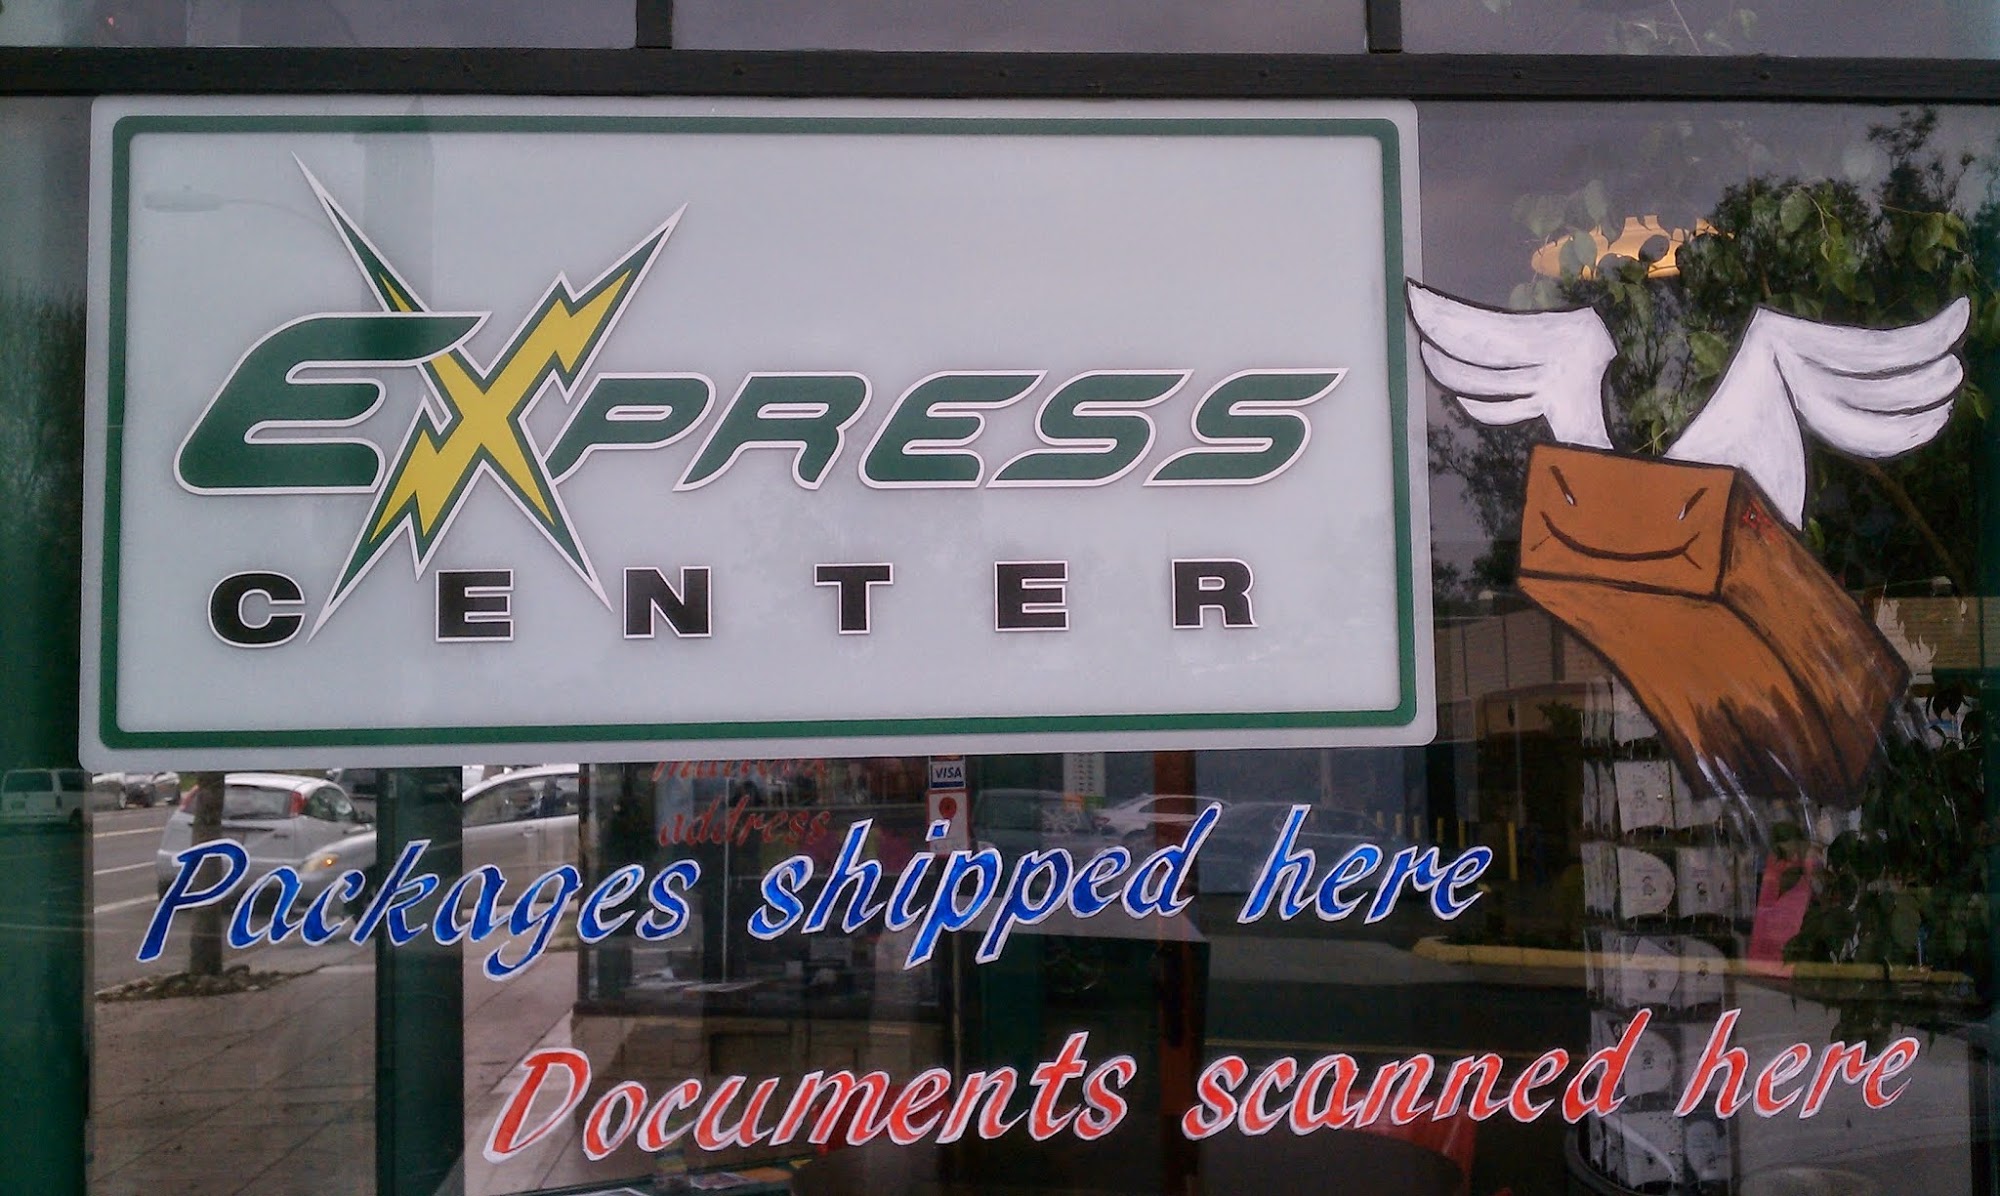 Express Postal business center